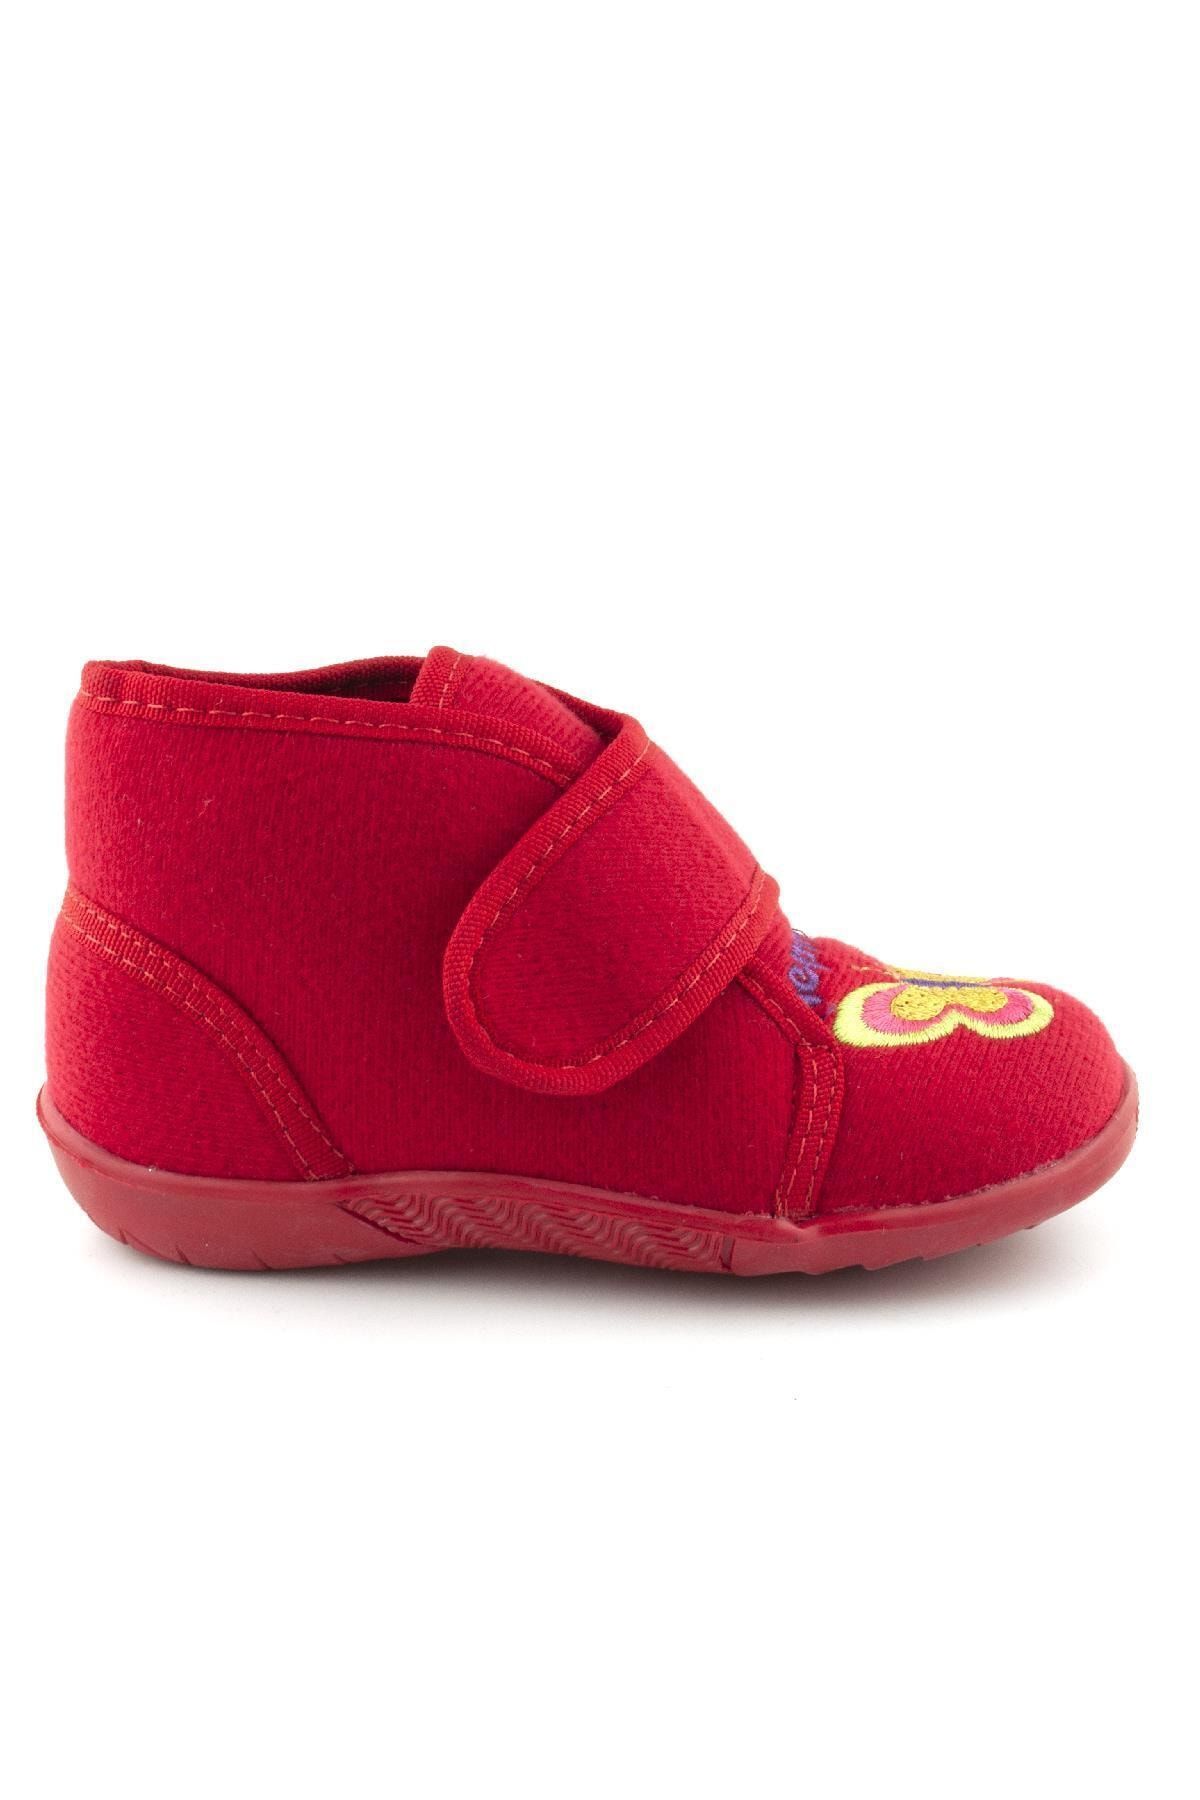 Cici Bebe Ayakkabı Kırmızı Kelebekli Ortopedik Ev/kreş Kız Çocuk Panduf